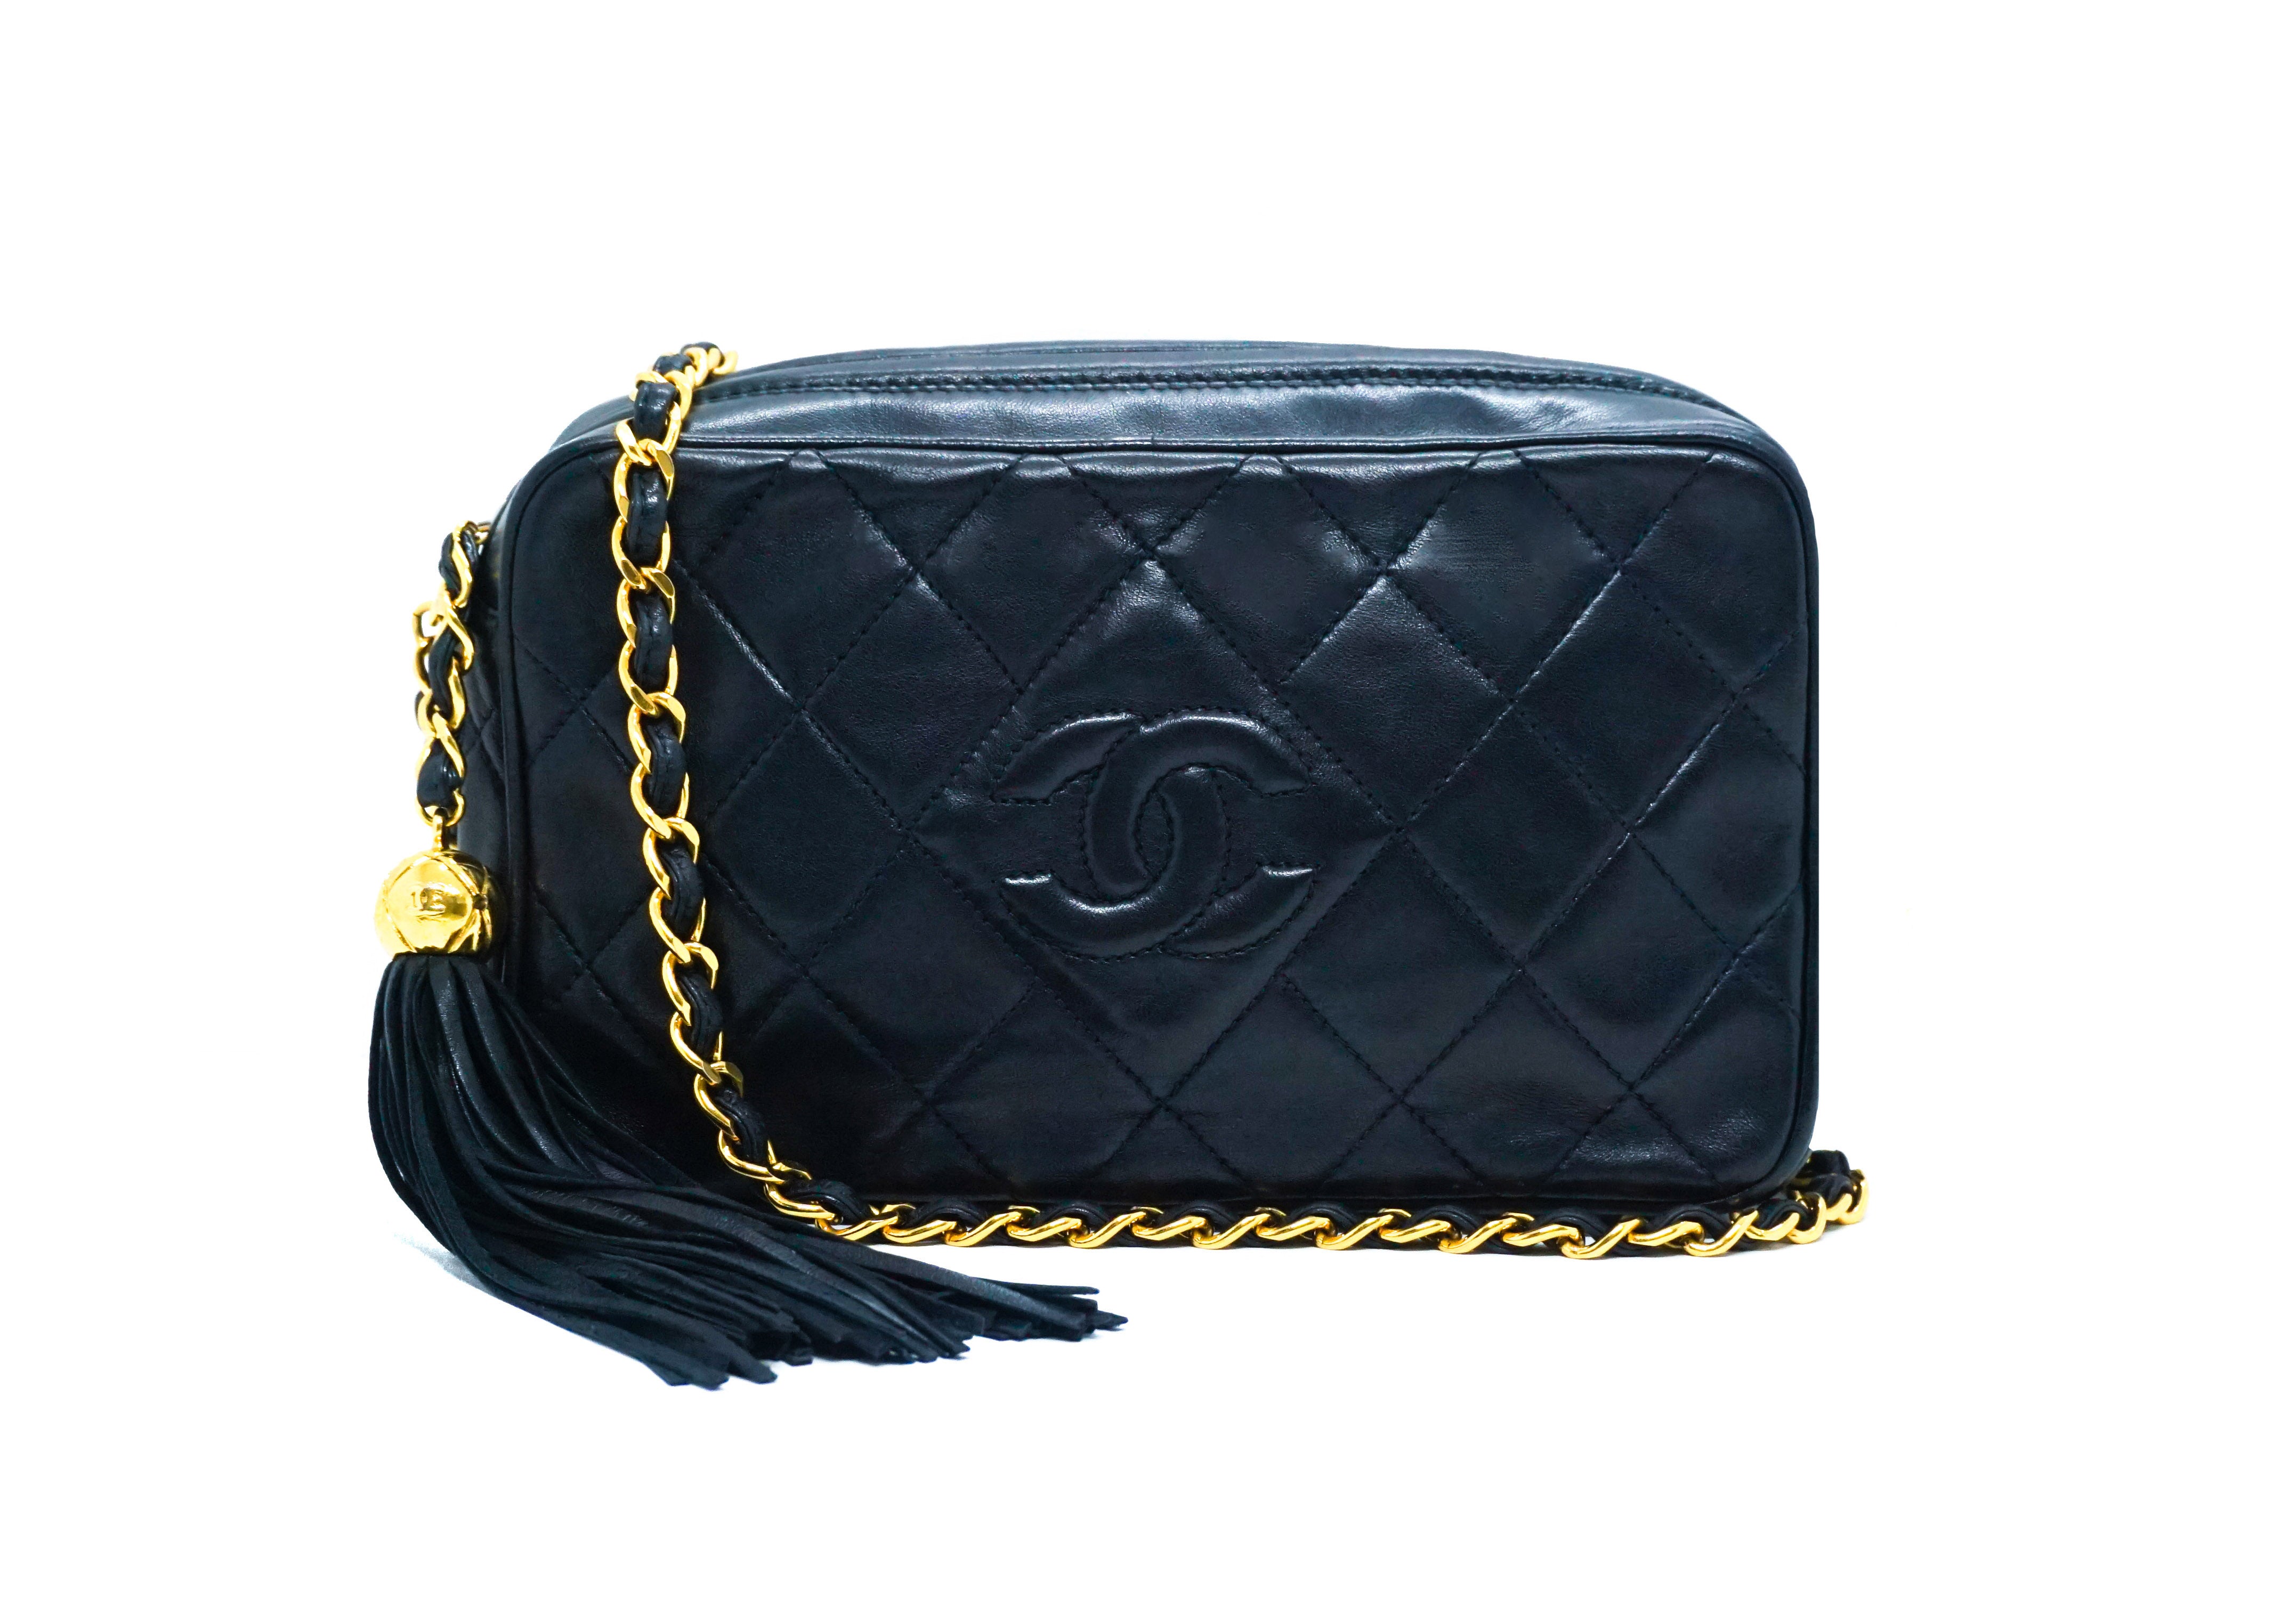 Vintage Rare CHANEL Navy Shoulder Tote Bag Lambskin Leather - Mrs